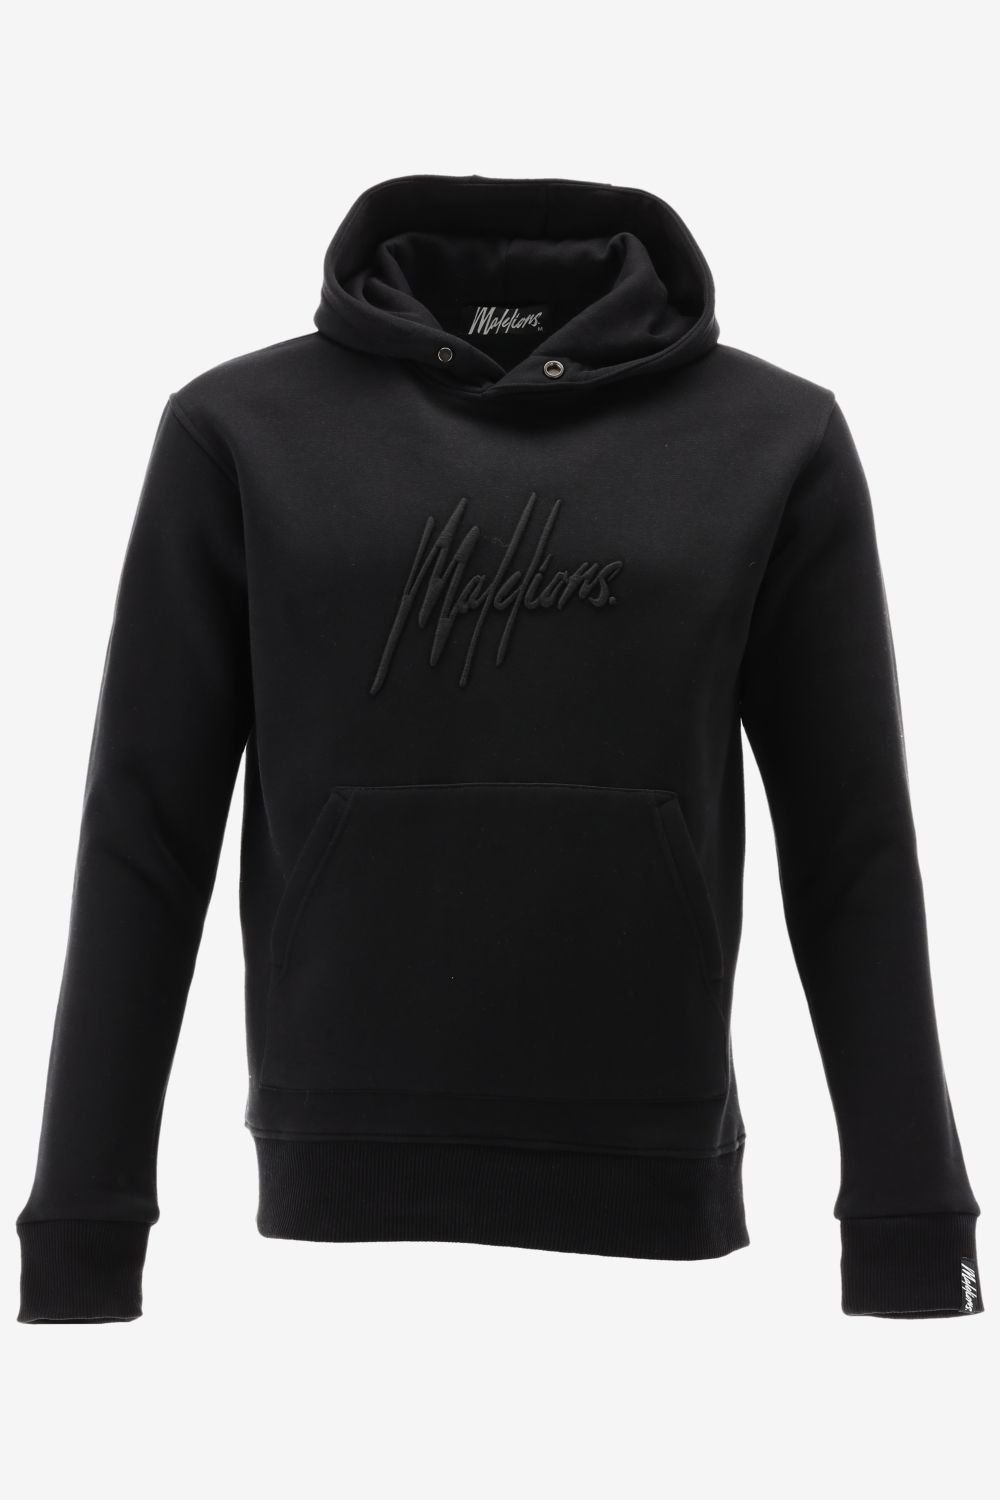 Malelions hoodie essentials hoodie maat L